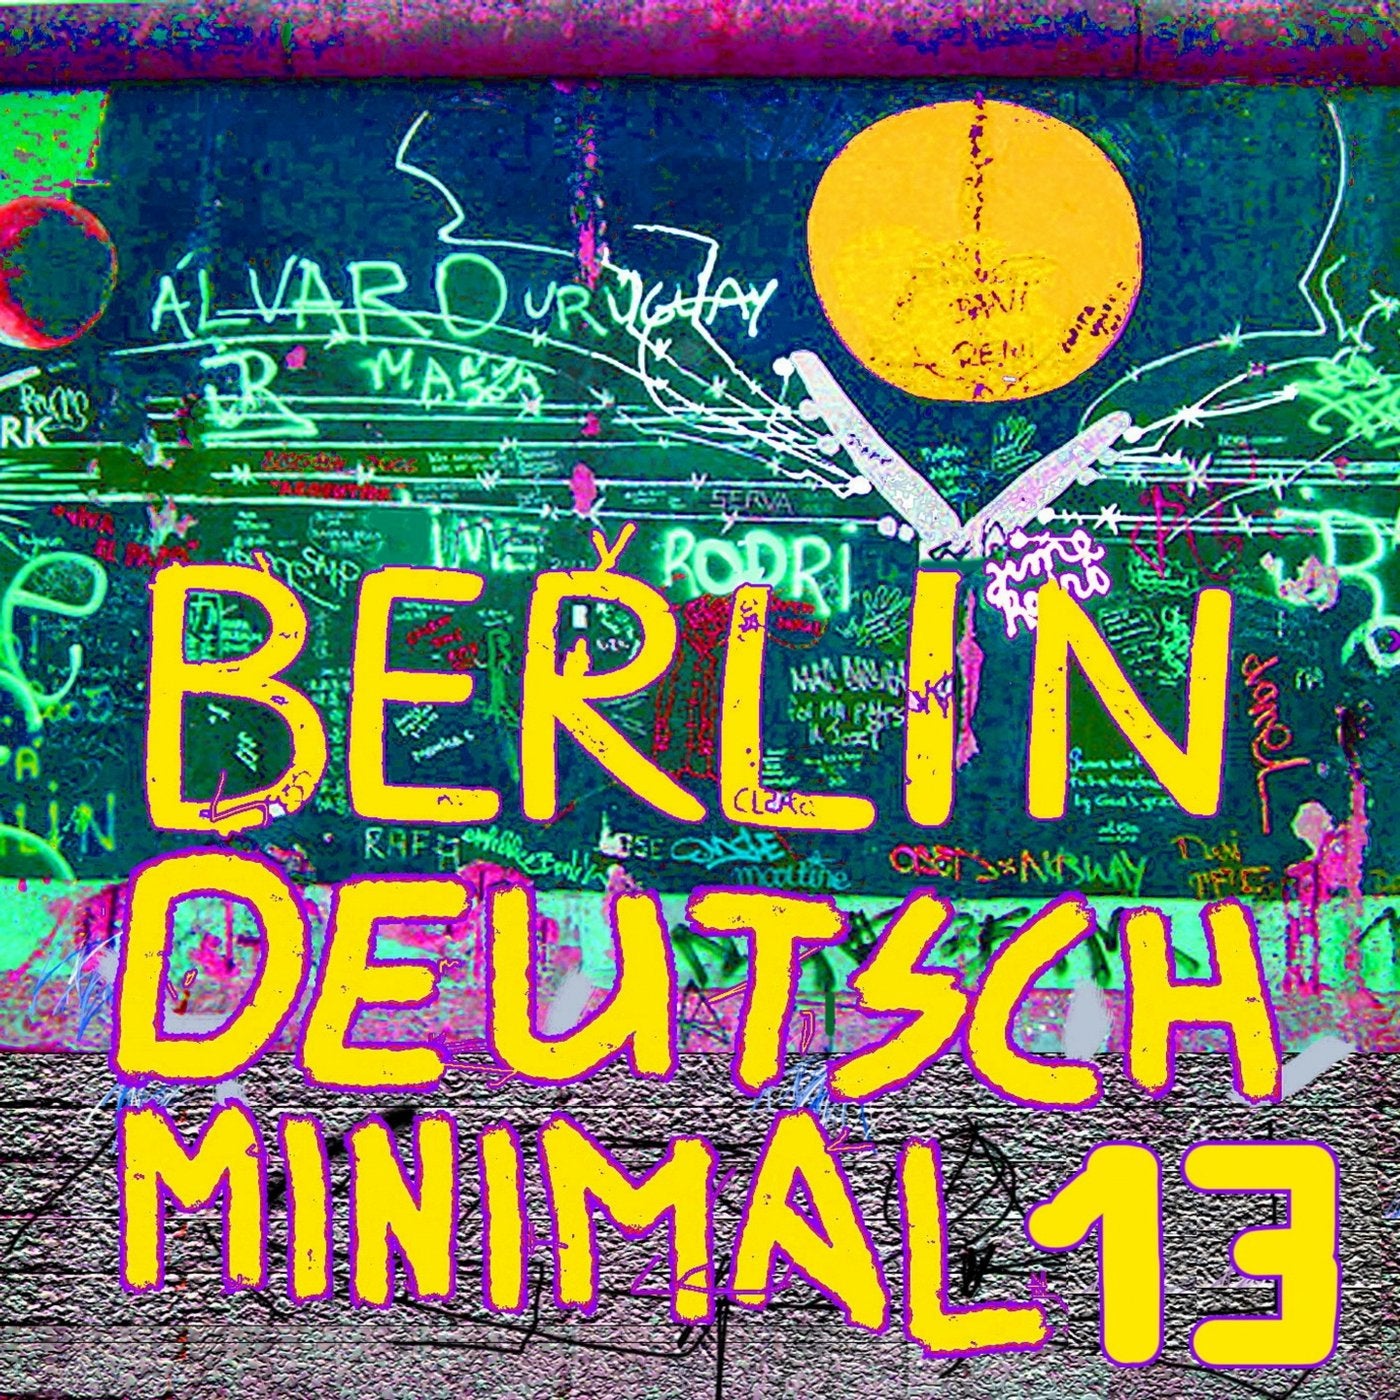 Berlin Deutsch Minimal 13